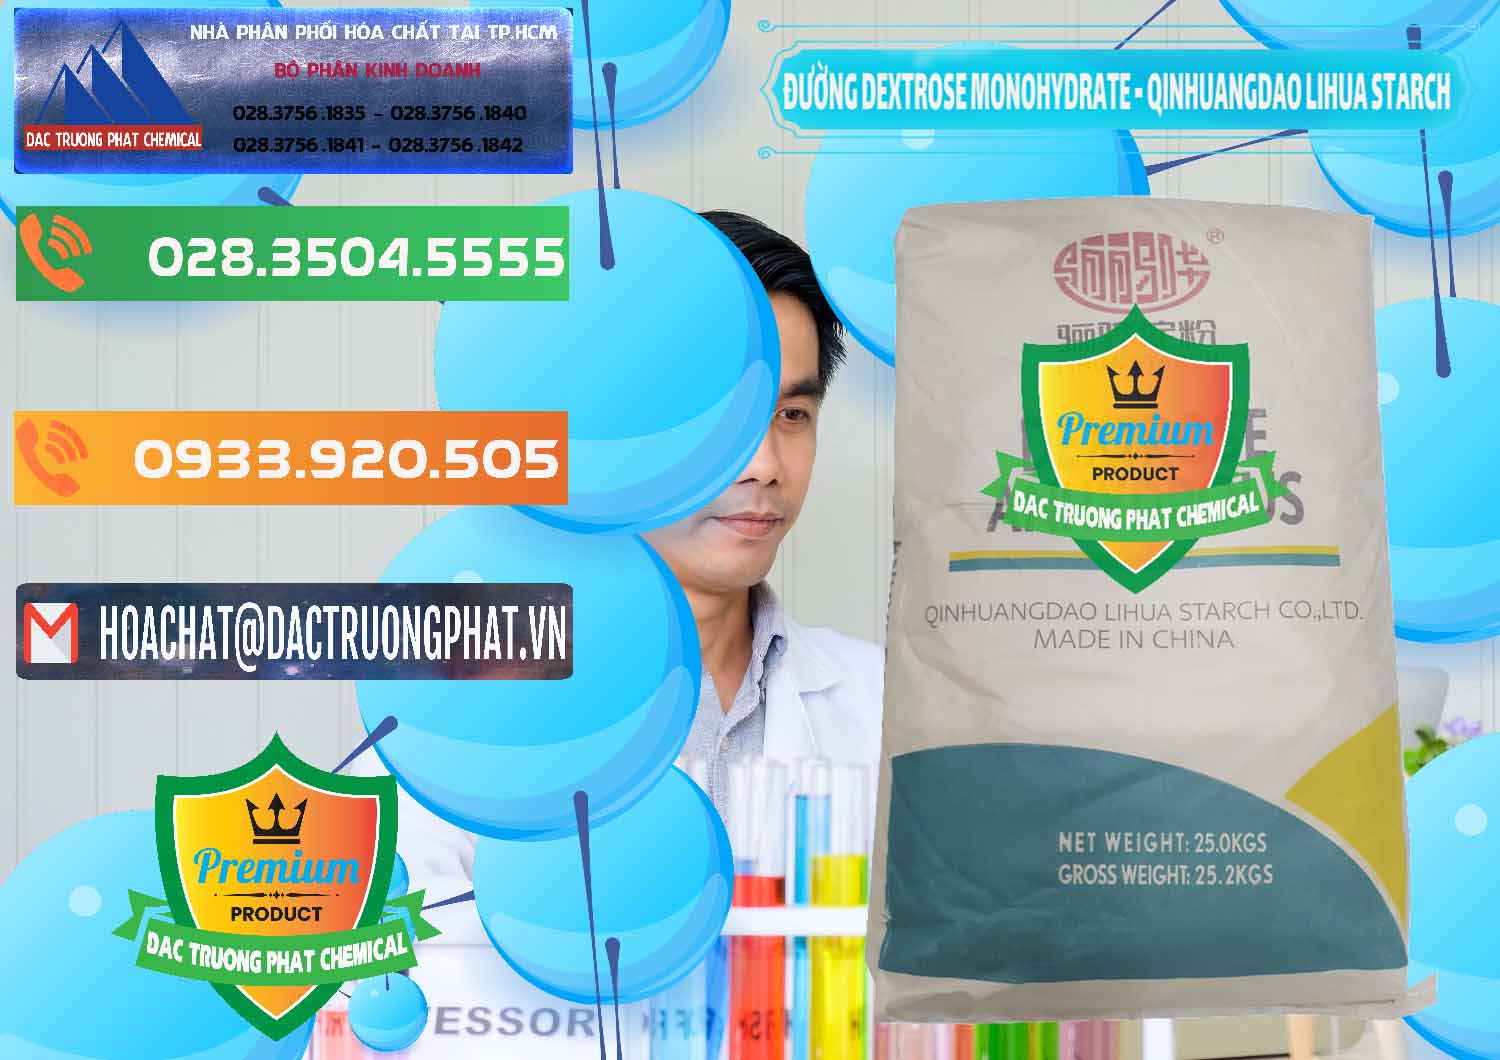 Chuyên bán _ cung cấp Đường Dextrose Monohydrate Food Grade Qinhuangdao Lihua Starch - 0224 - Công ty kinh doanh và cung cấp hóa chất tại TP.HCM - hoachatxulynuoc.com.vn